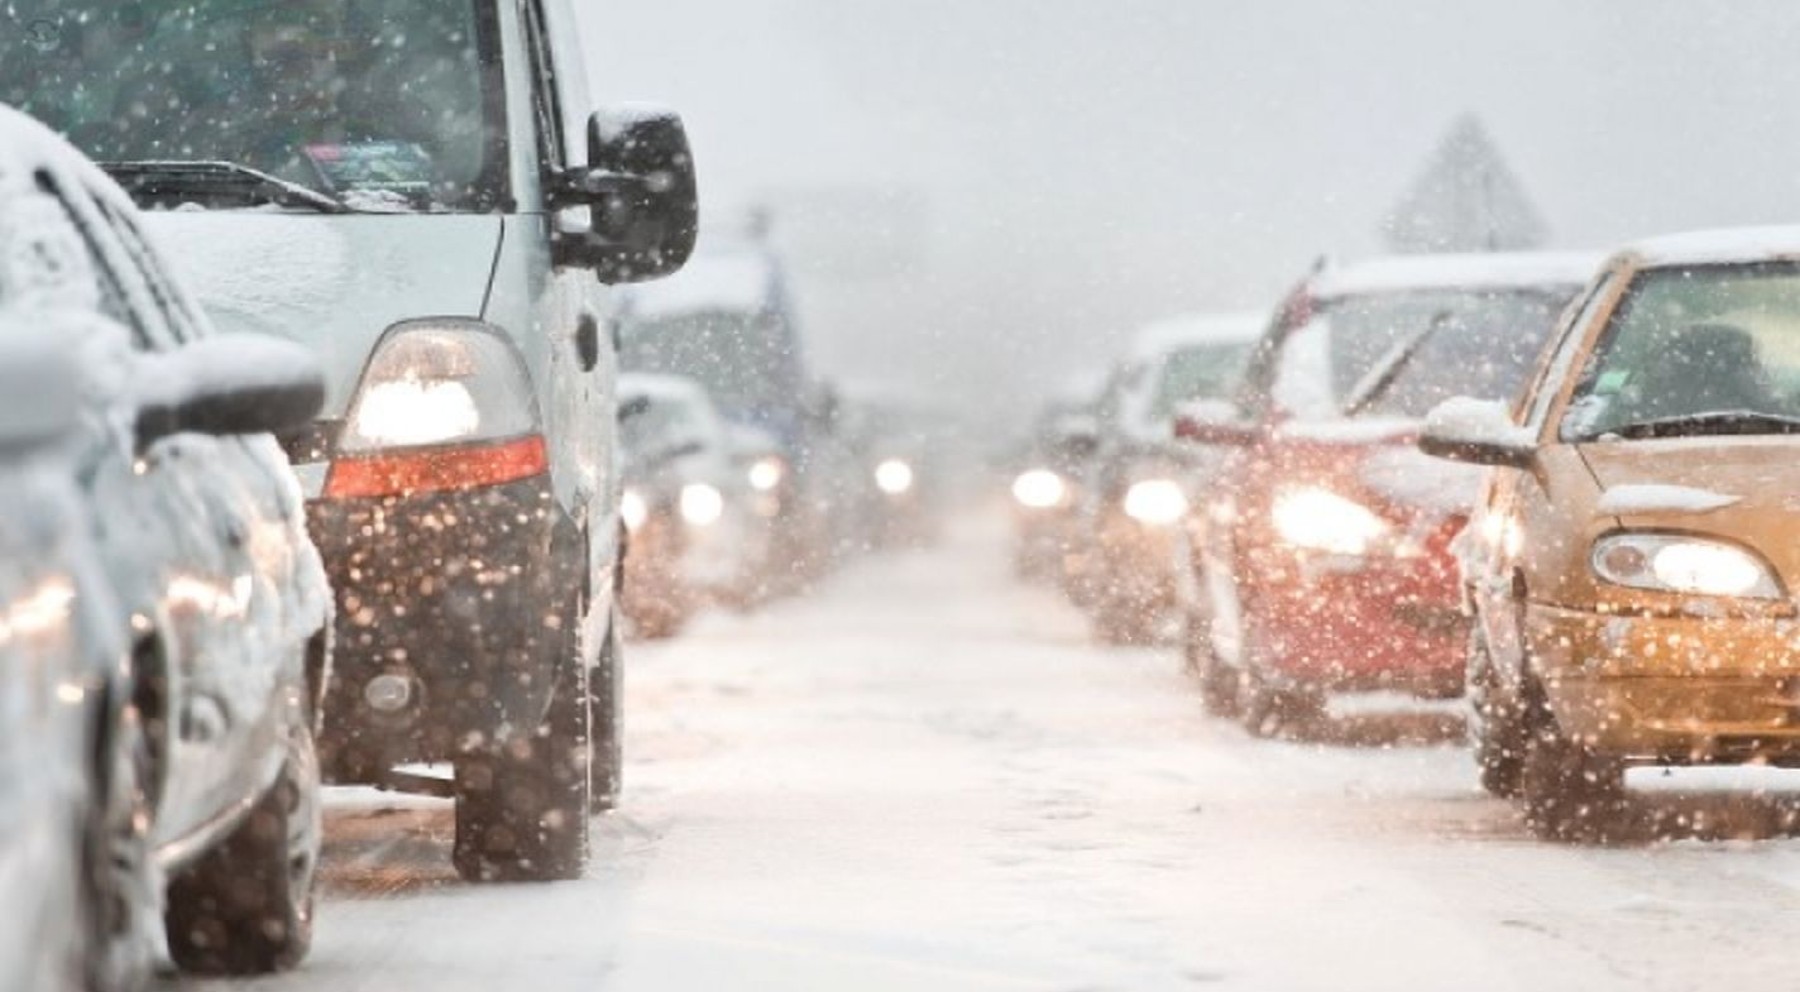 Kit de invierno: qué se debe llevar en el coche cuando nieva o hace frío